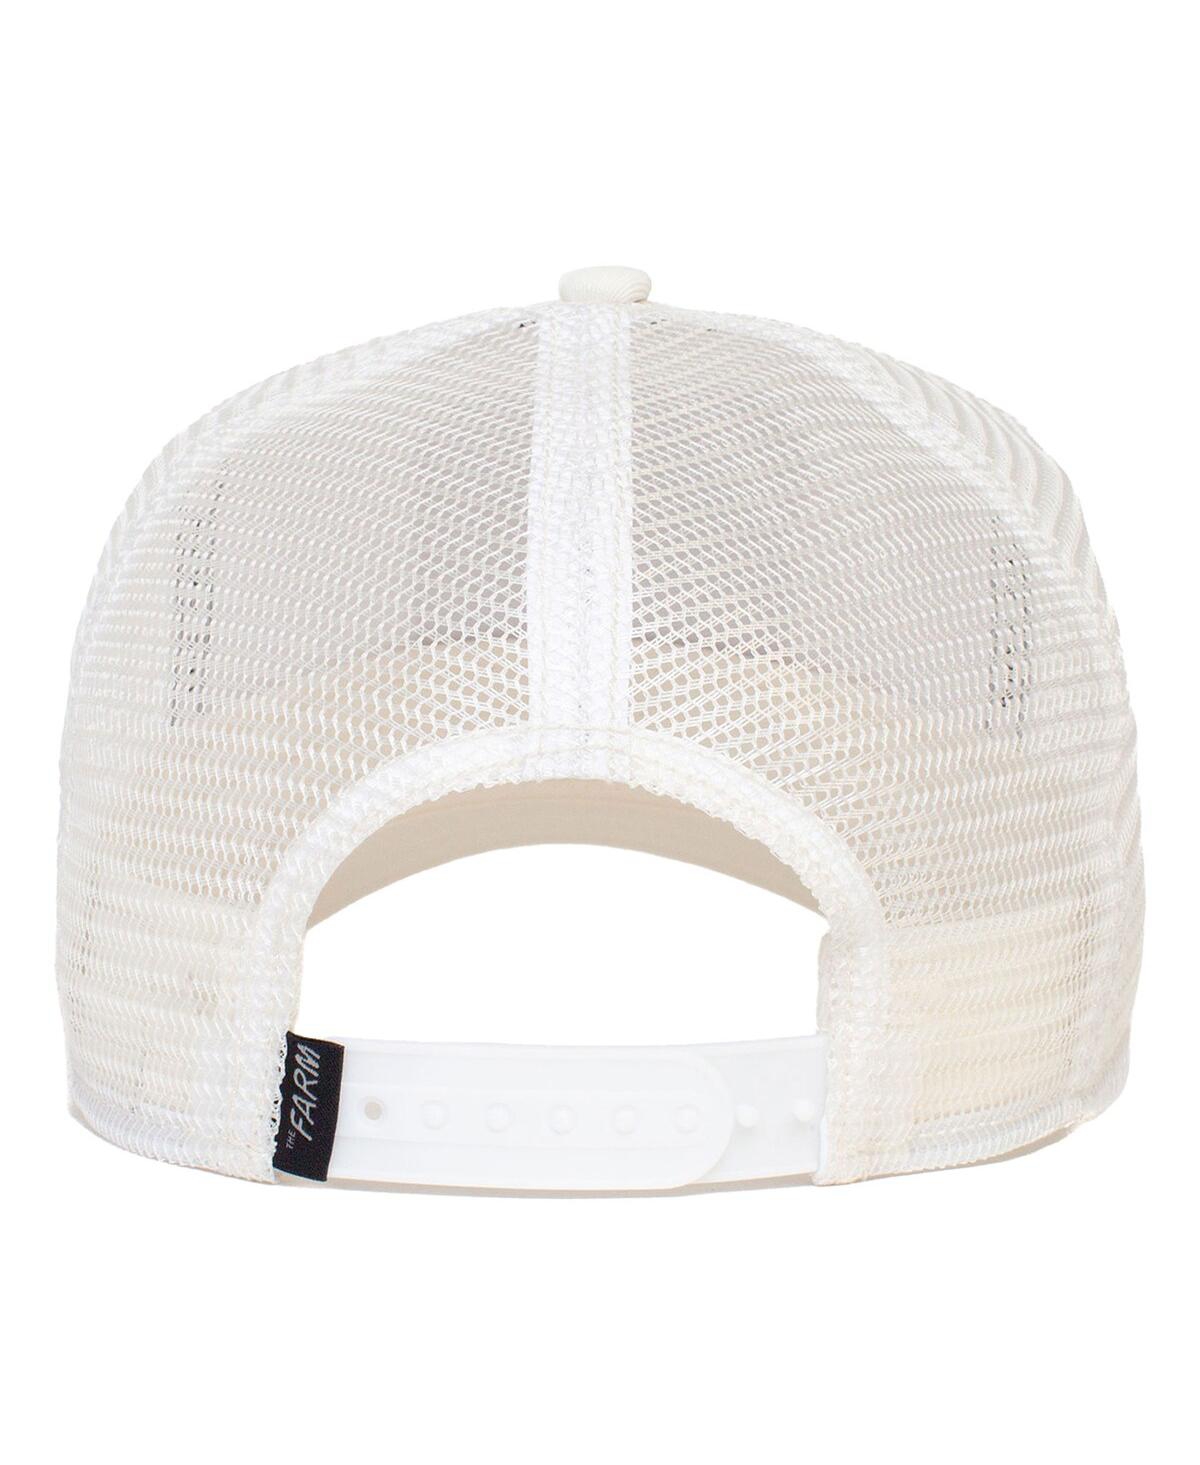 Shop Goorin Bros Men's White Tiger Trucker Adjustable Hat